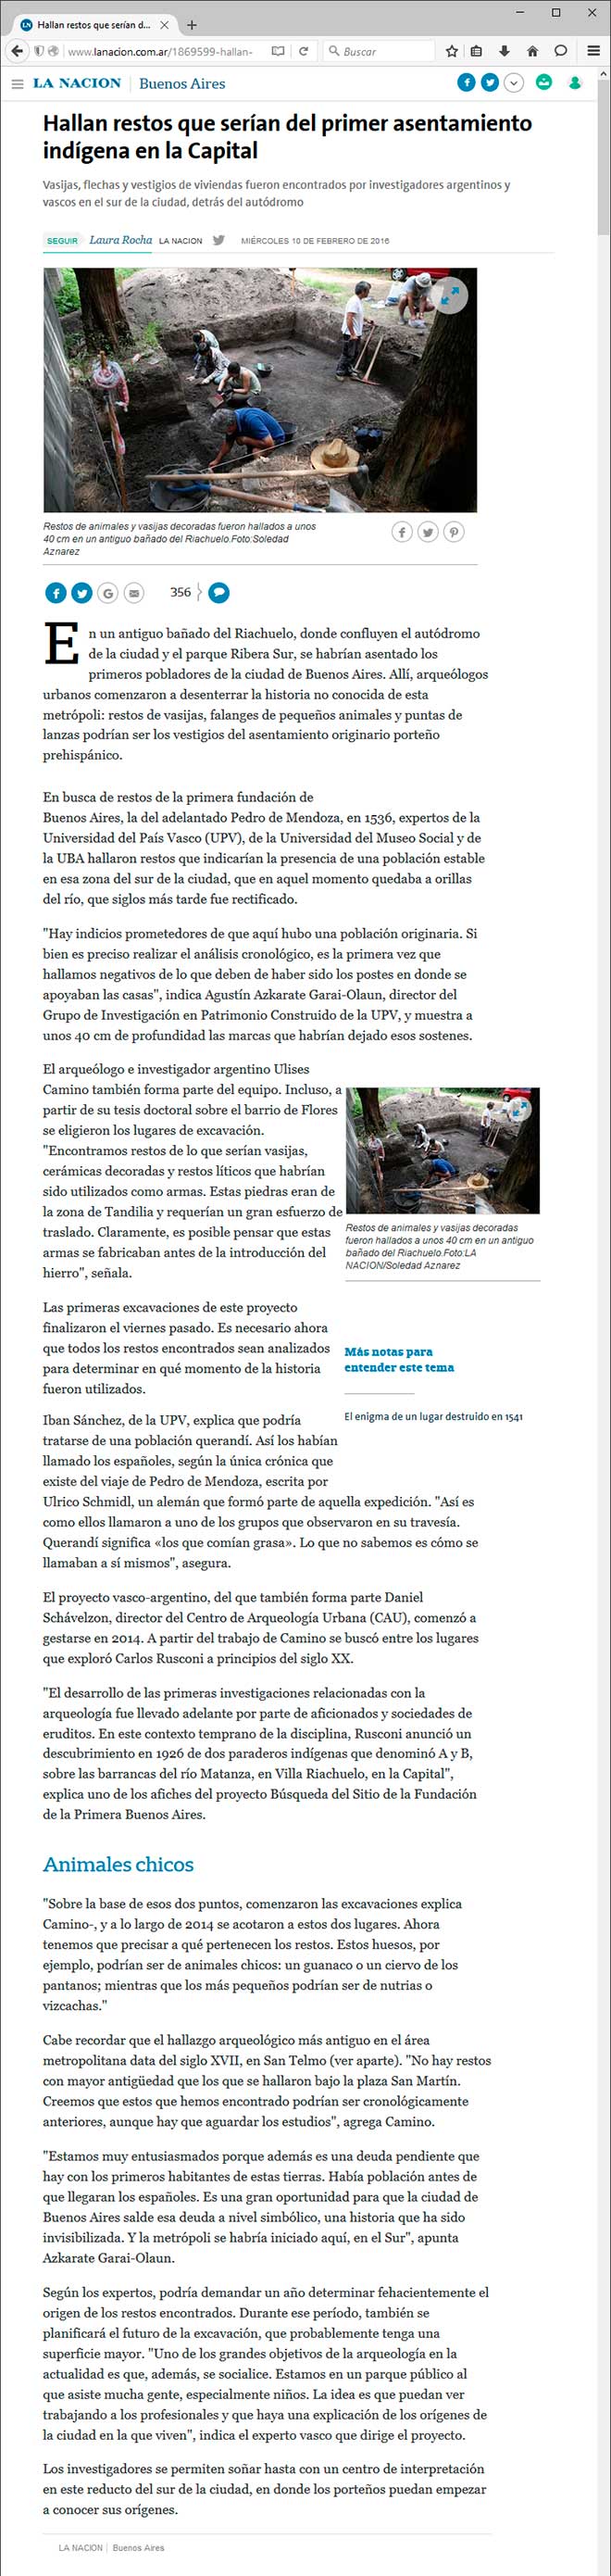 Captura de pantalla del diario La Nación On Line del día 10 de febrero de 2016